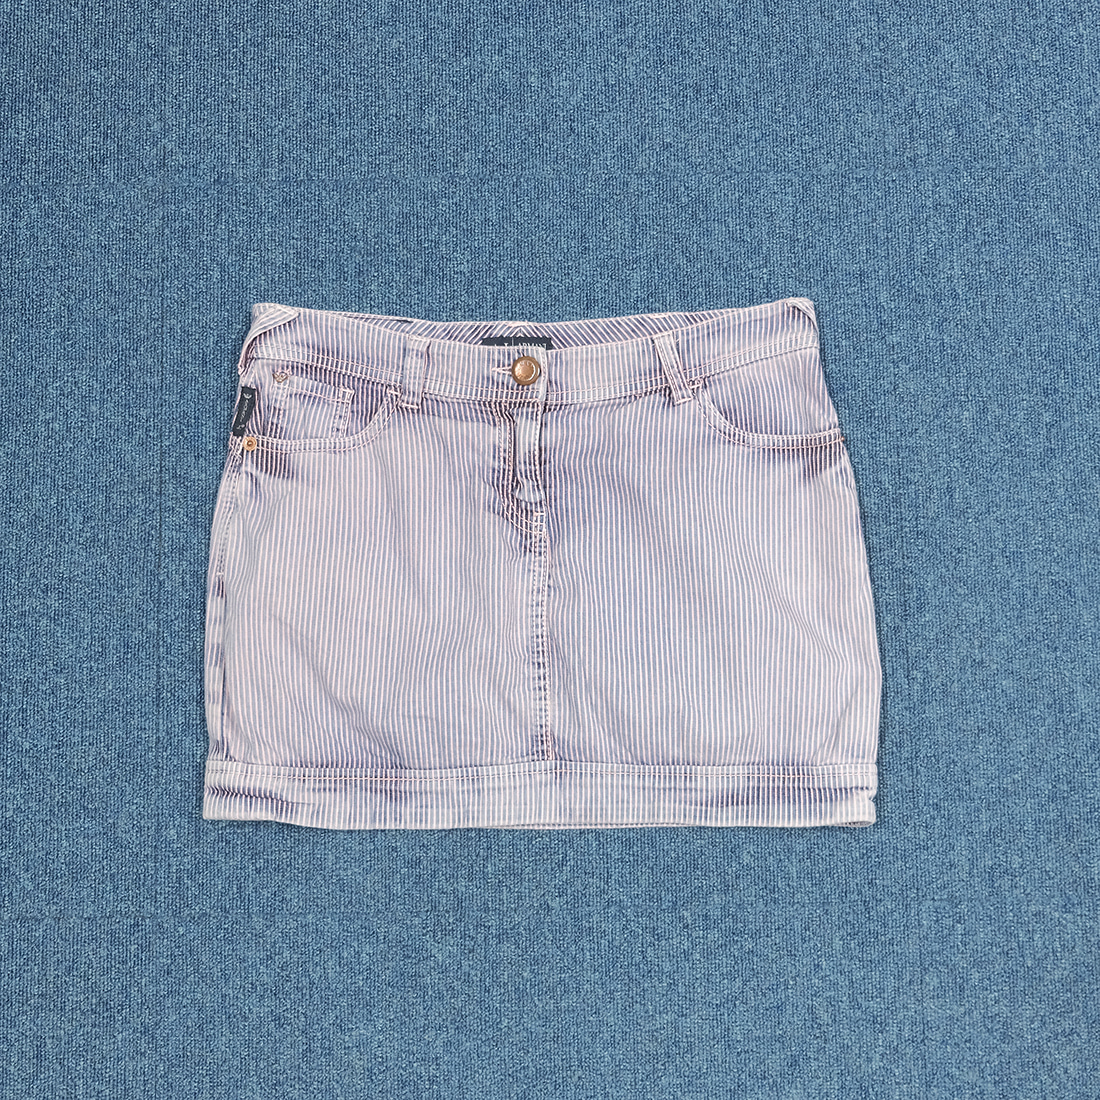 알마니 진스 / Made in italy  Armani jeans washed stripe denim skirt